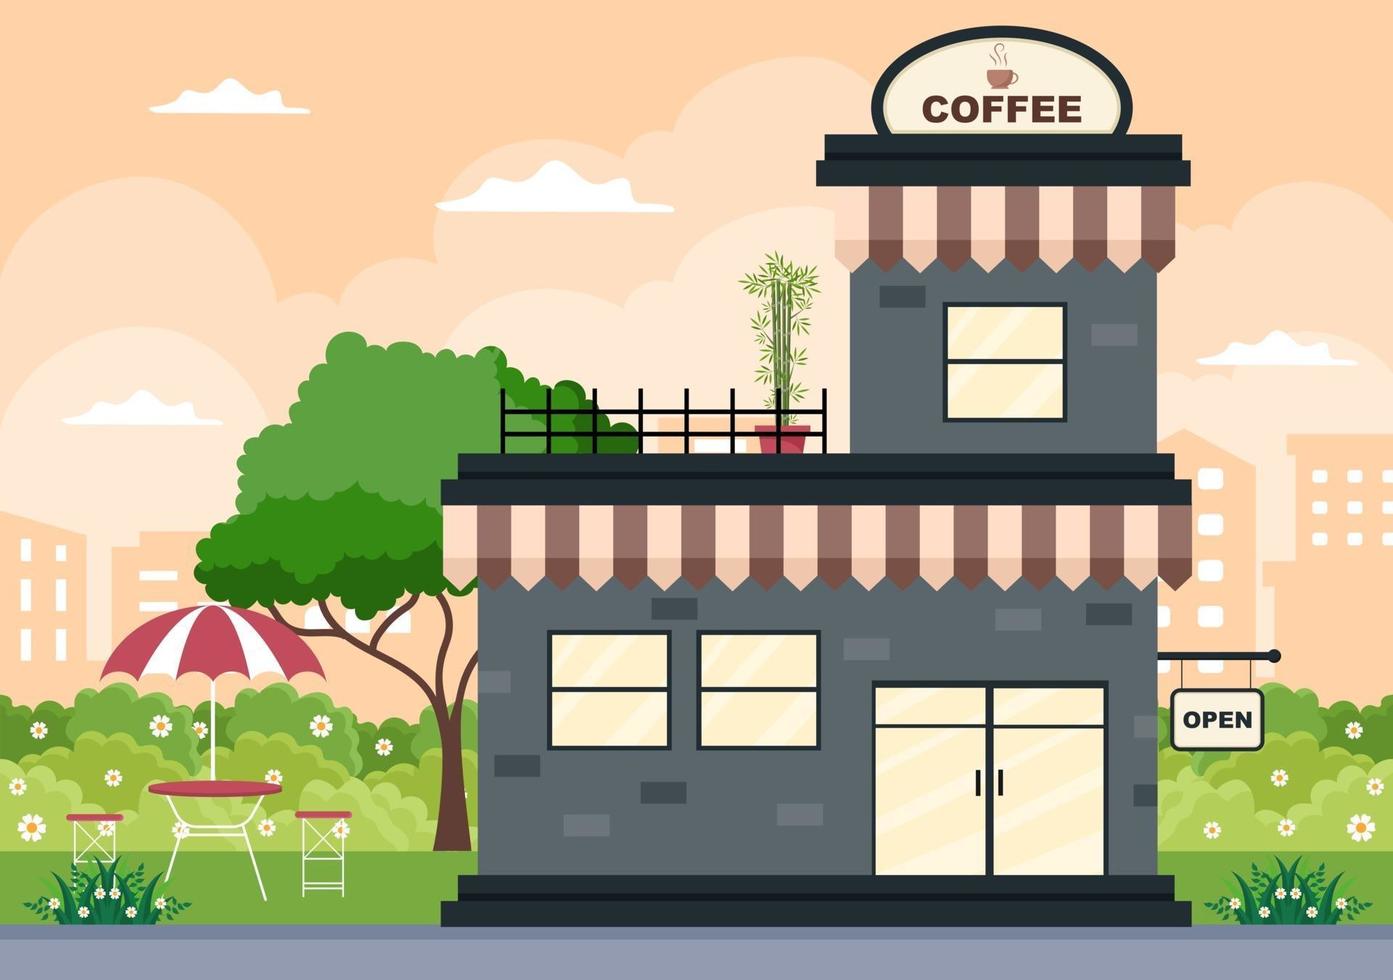 ilustração da cafeteria com placa aberta, árvore e exterior da loja do edifício. conceito de design plano vetor